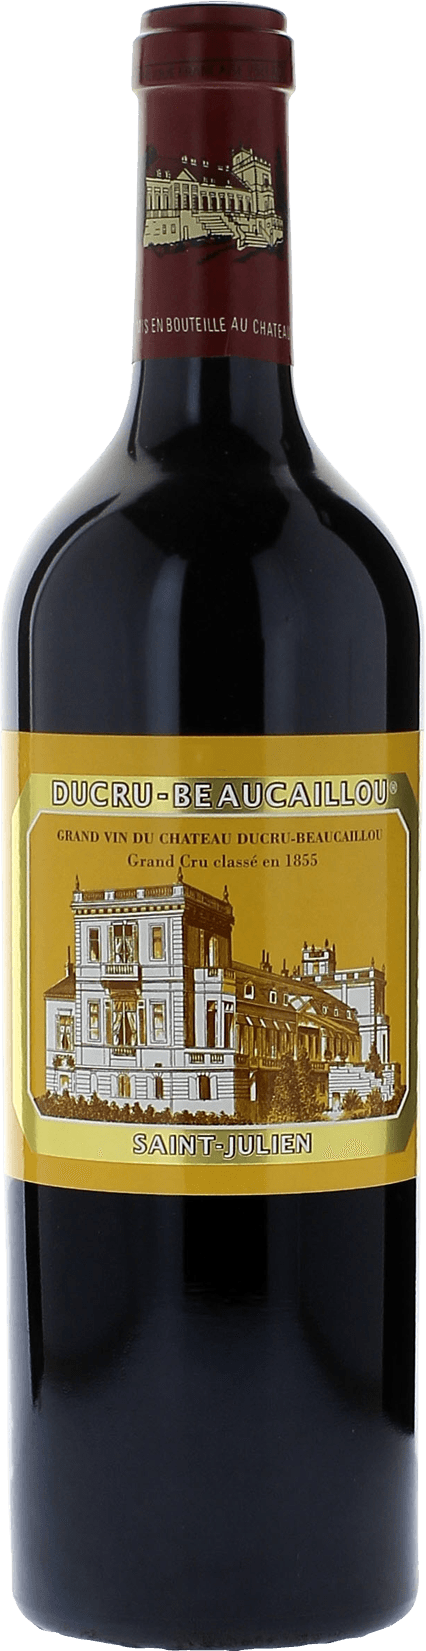 Ducru beaucaillou 1985 2me Grand cru class Saint-Julien, Bordeaux rouge